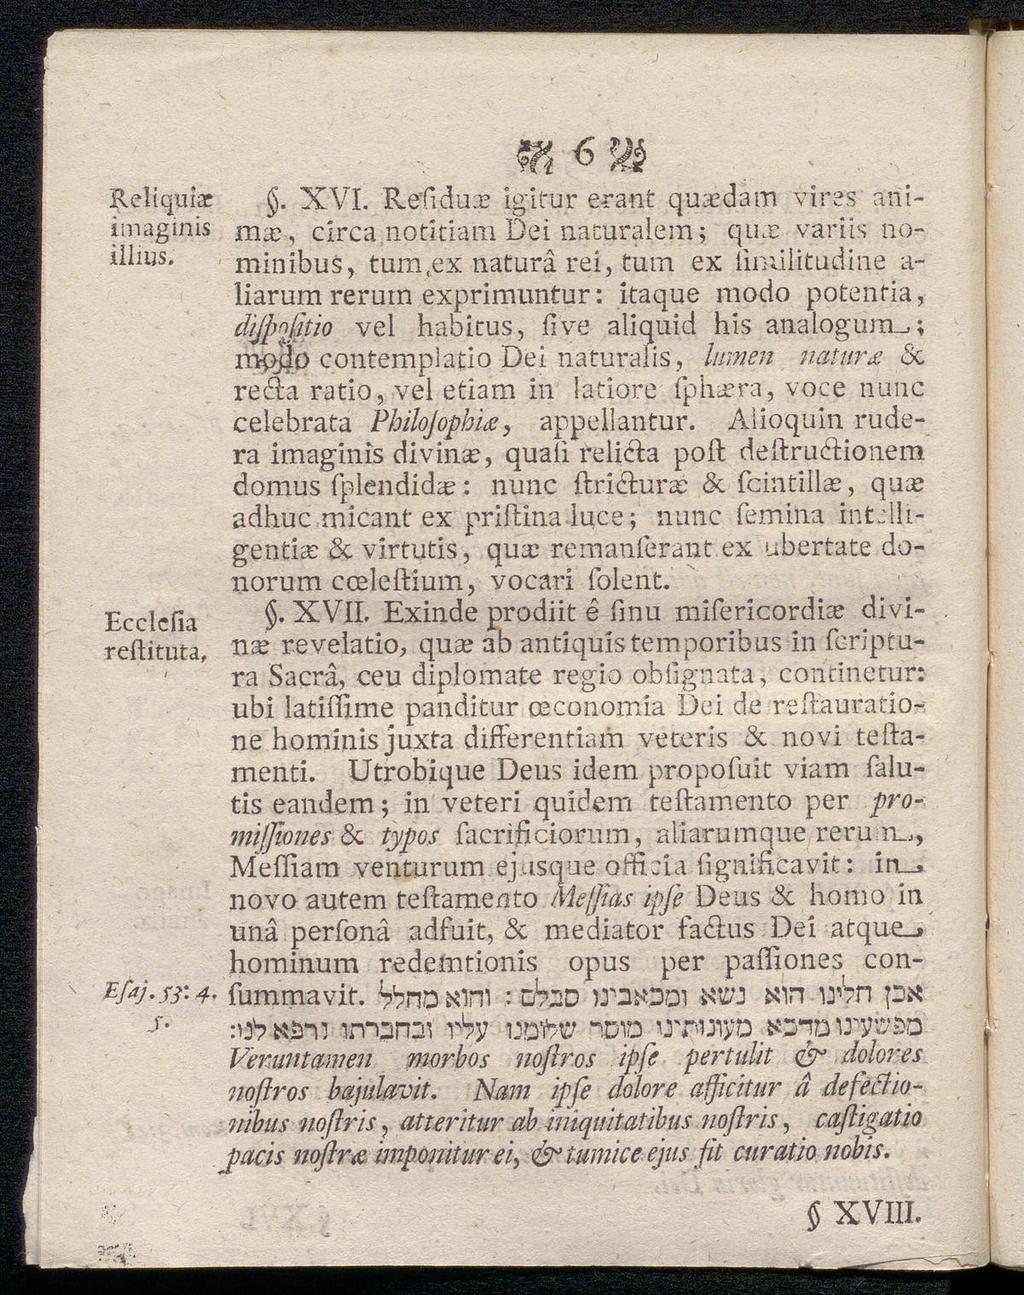 Reliquiar imaginis illms. Ecclciia reftituta, Wi ^ ^. XVI.